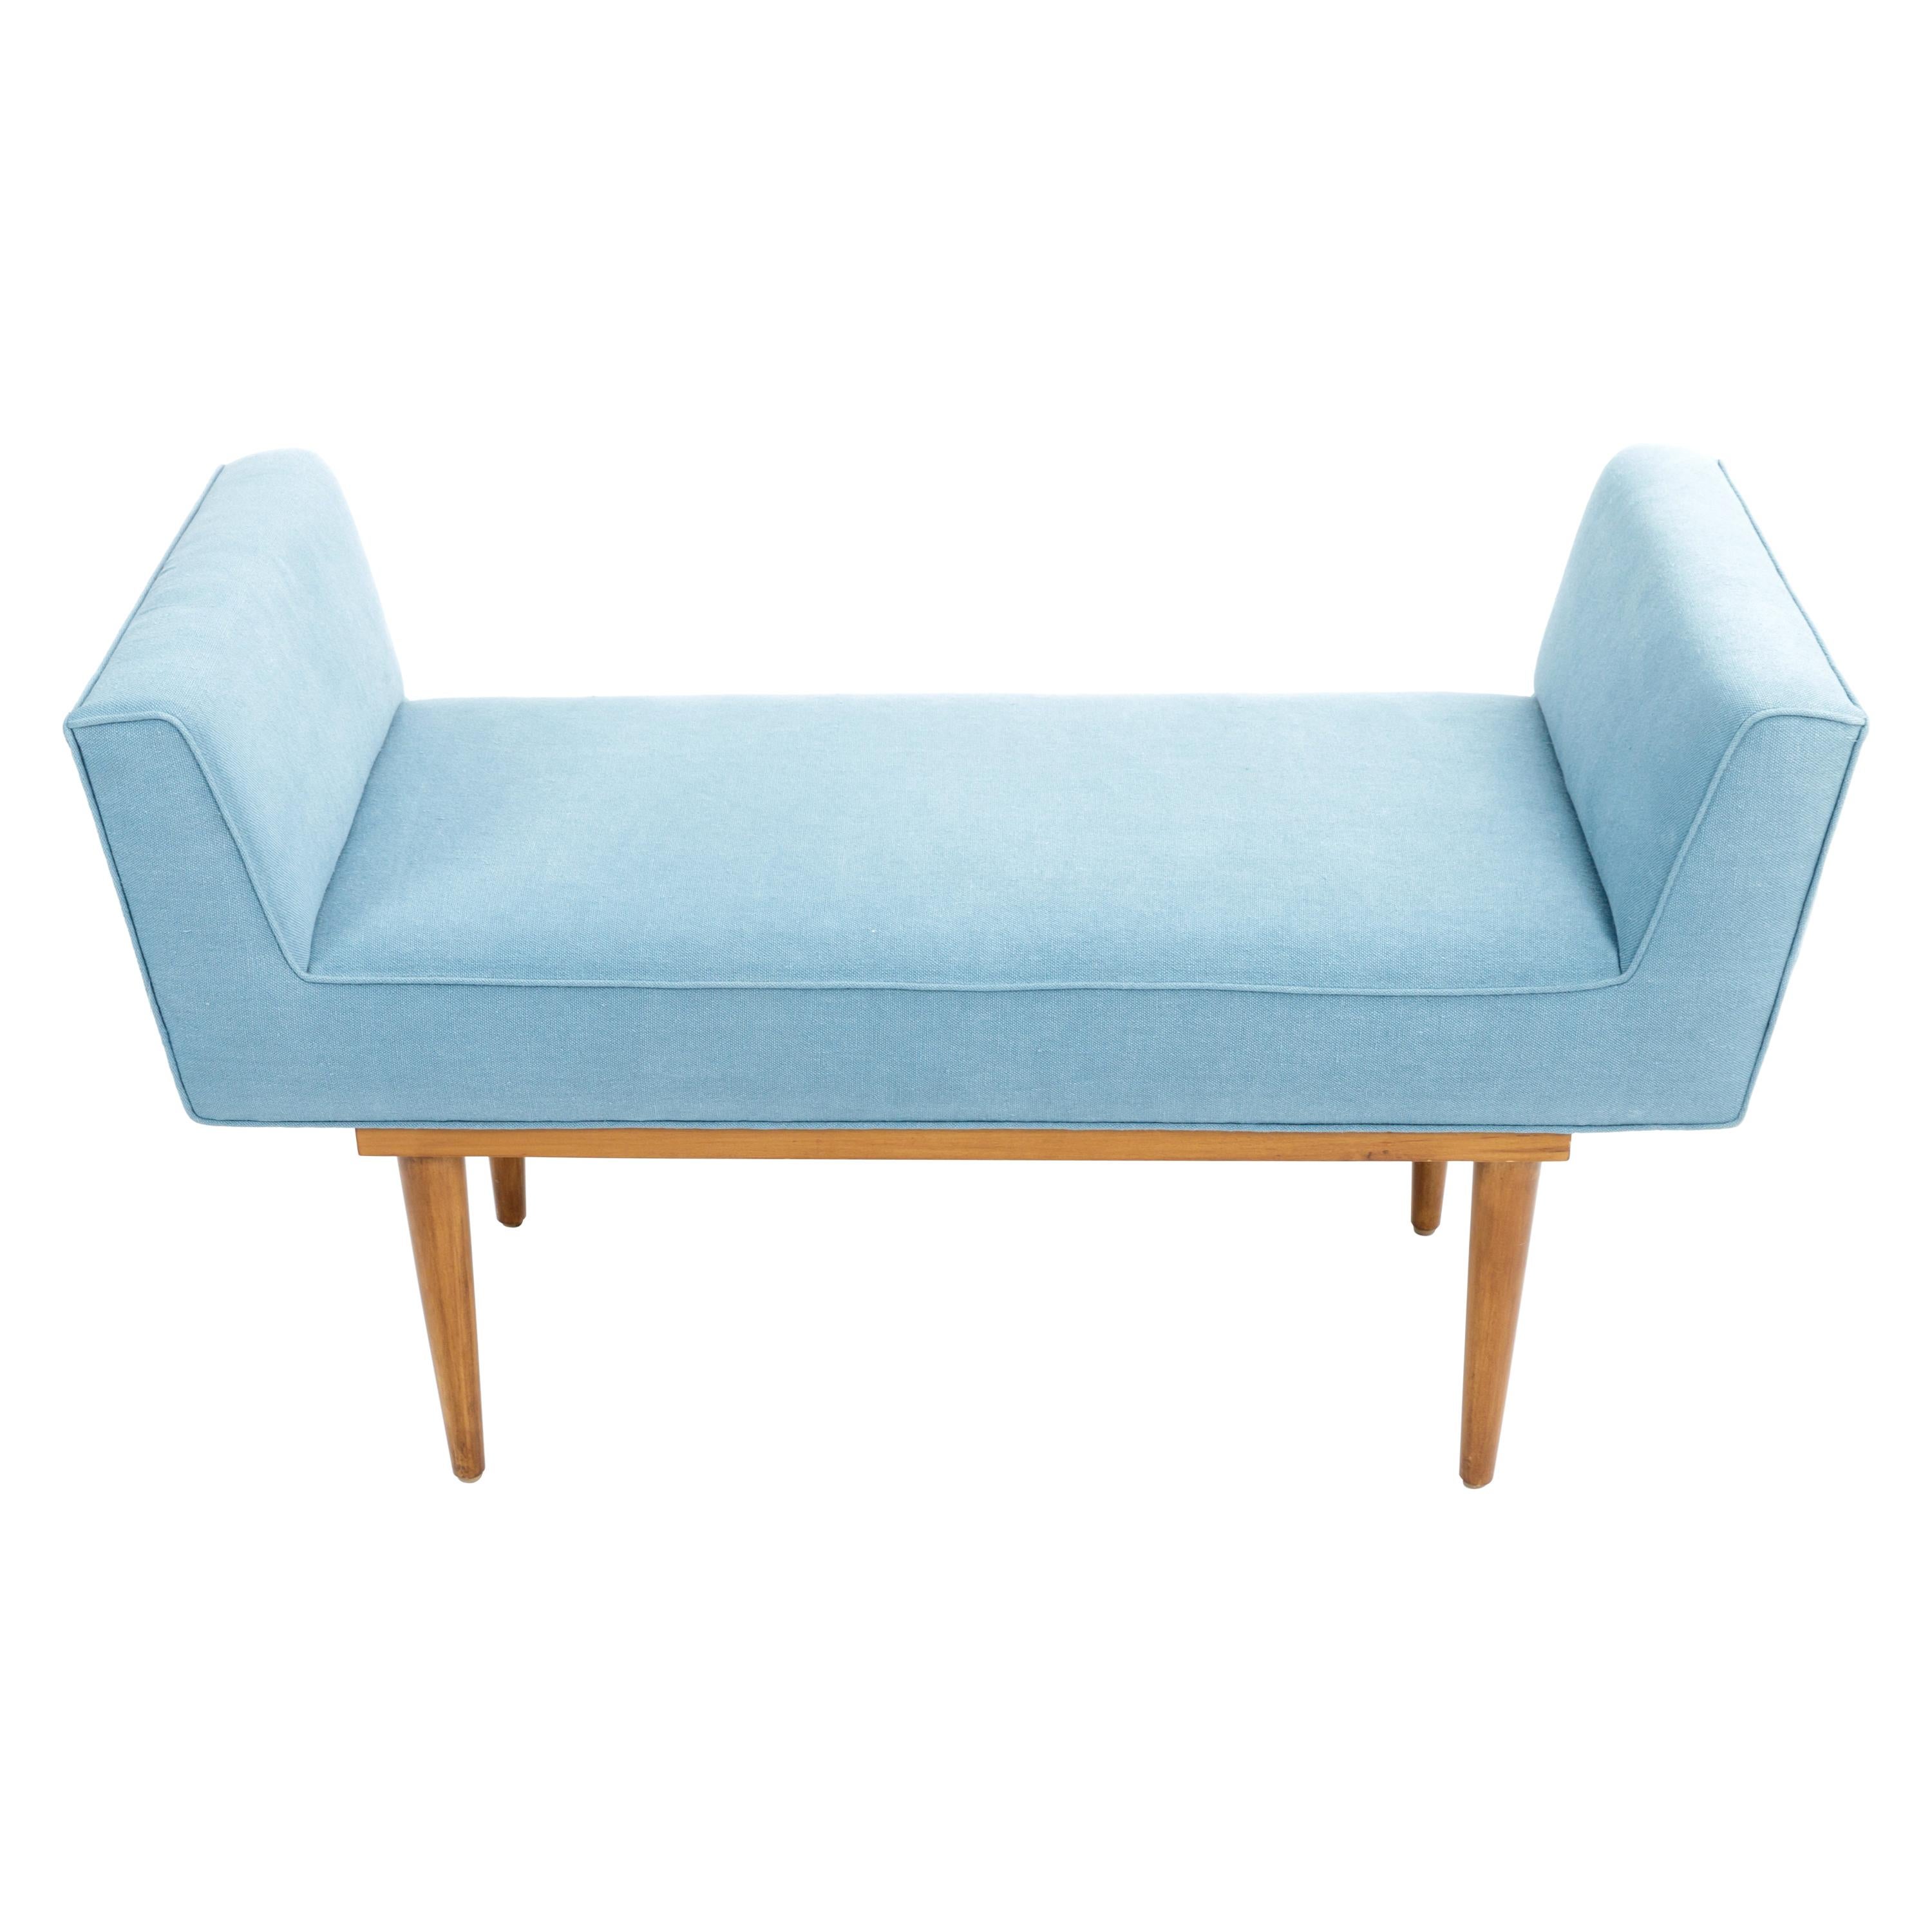 Mid-Century Boudoir Bench Upholstered in a Denim Blue Linen